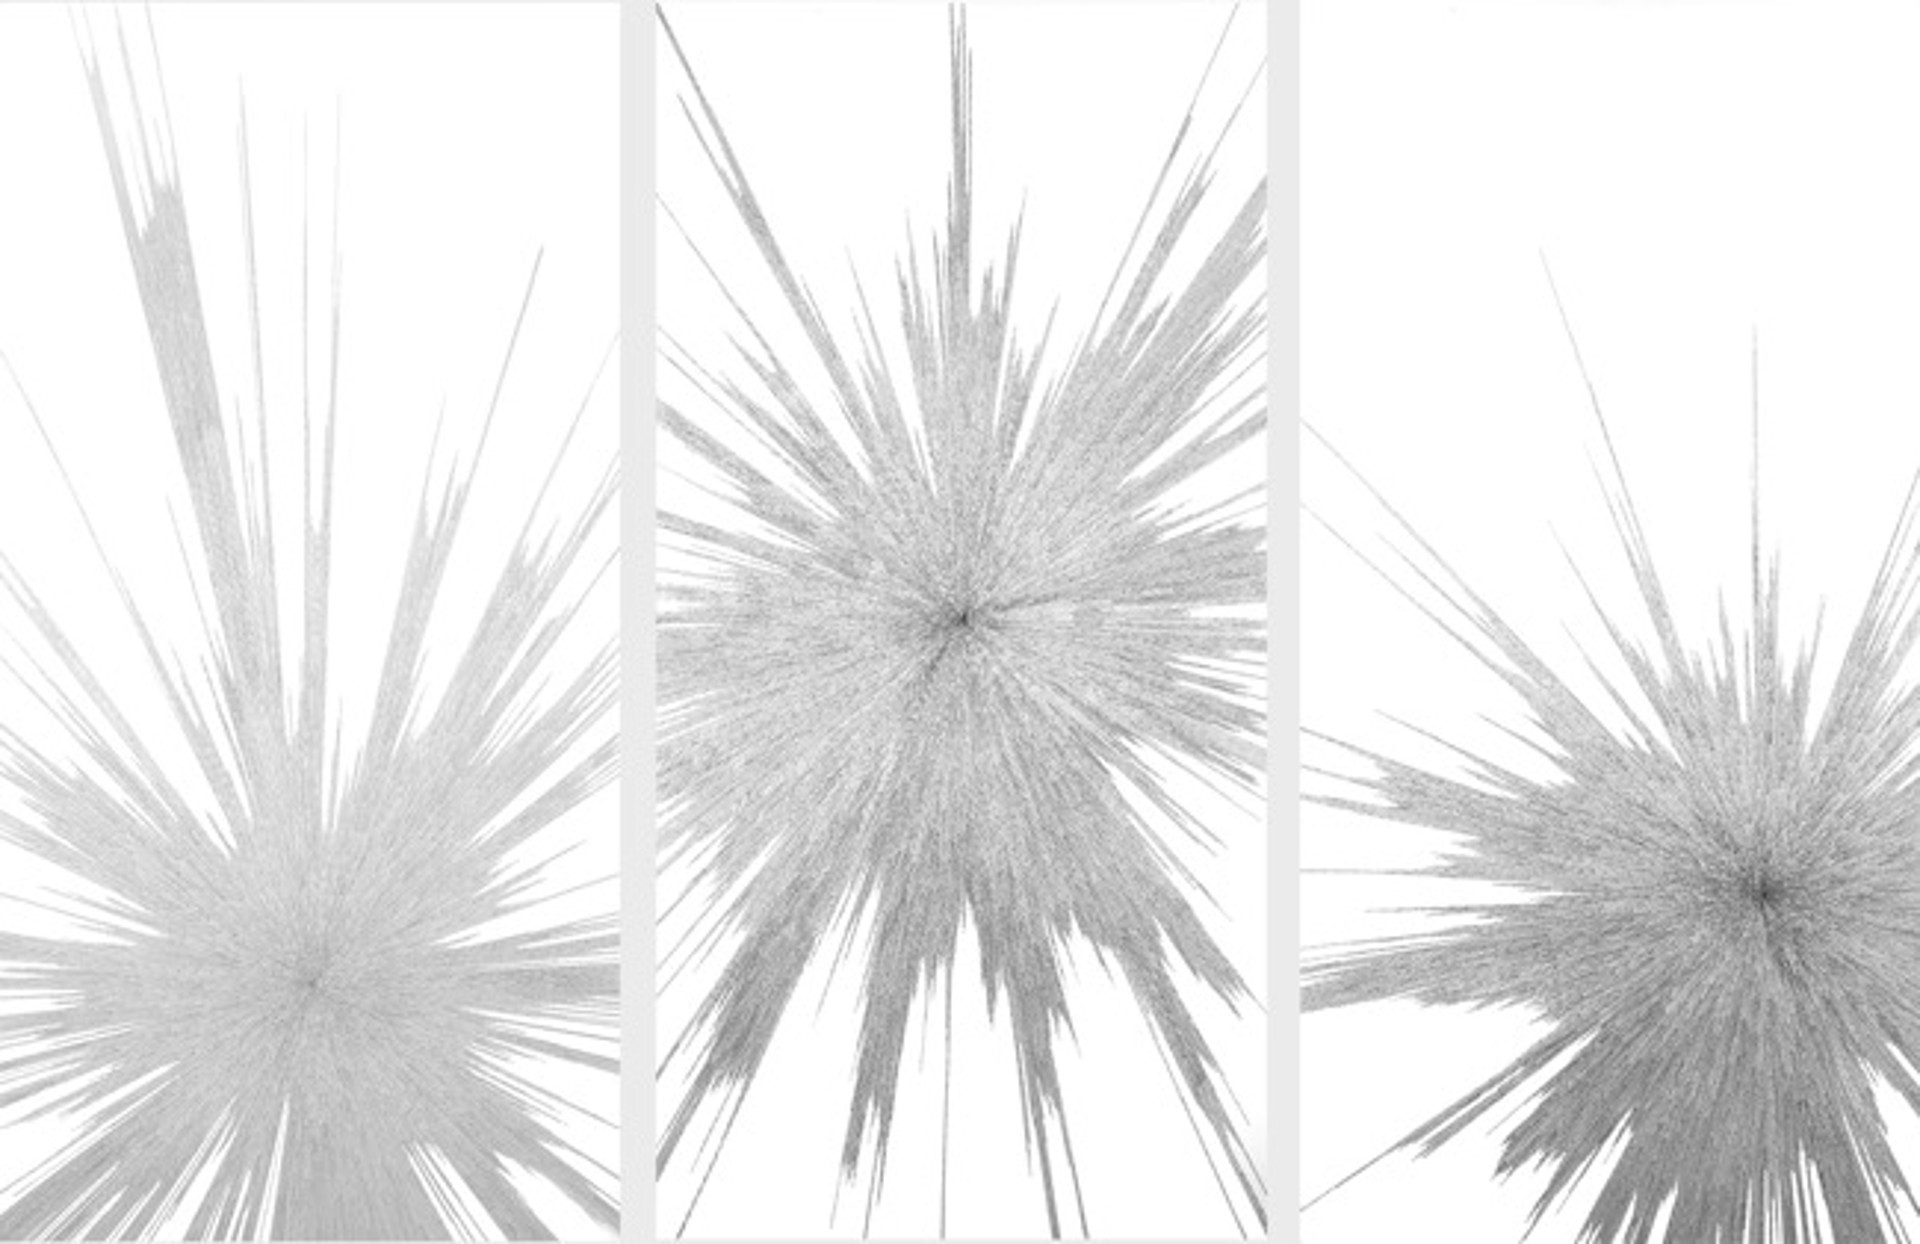 Cosmology I,II,III (Triptych) by Jenifer Kent